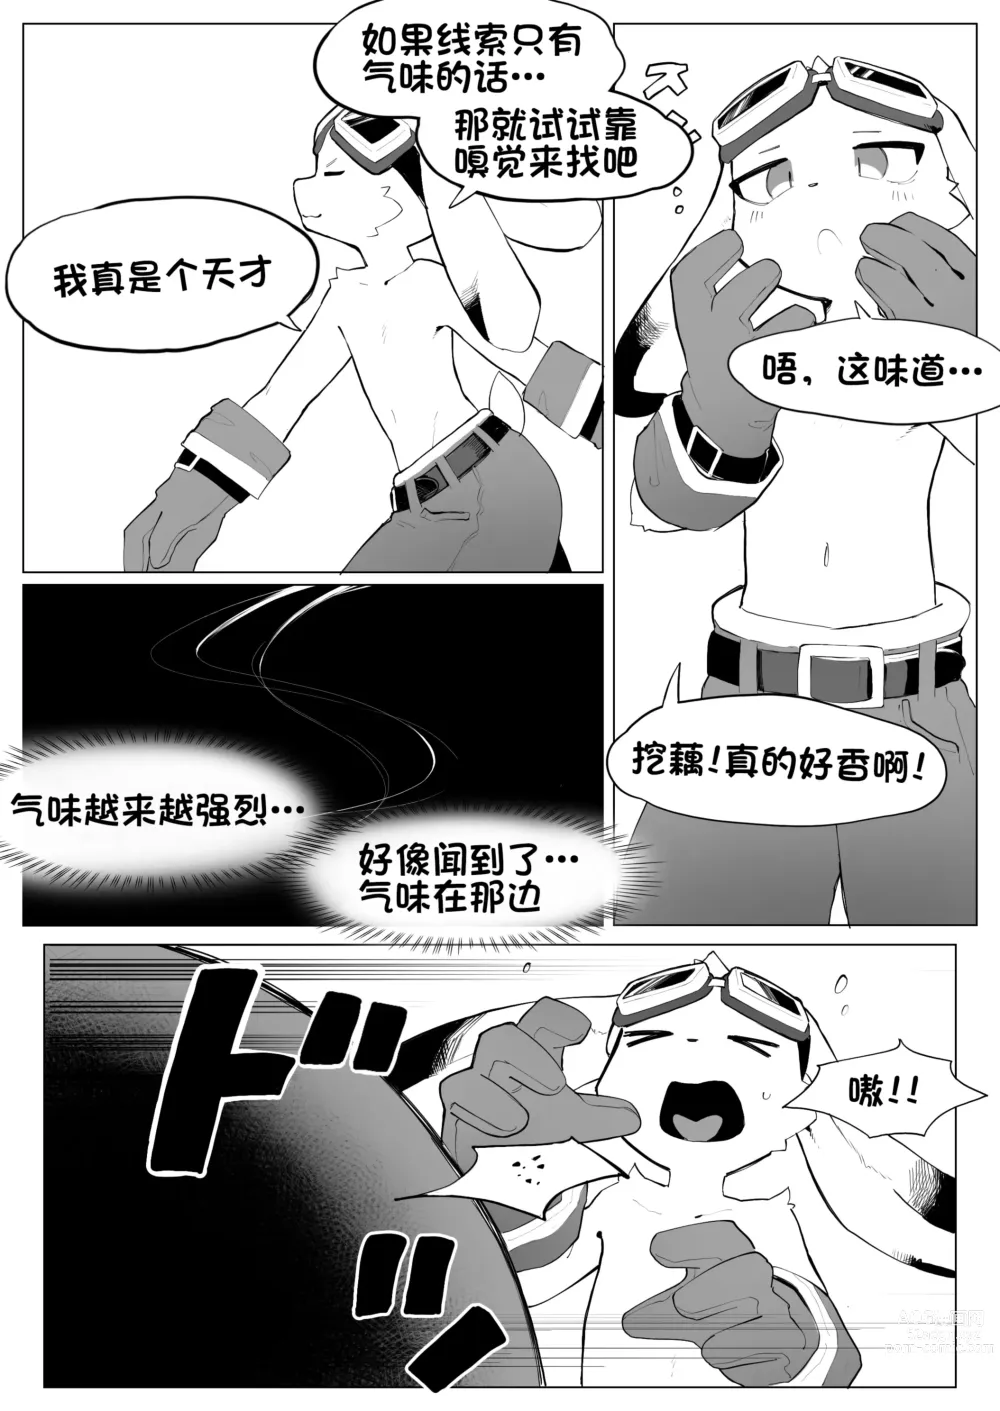 Page 3 of doujinshi 见习兽人冒险家